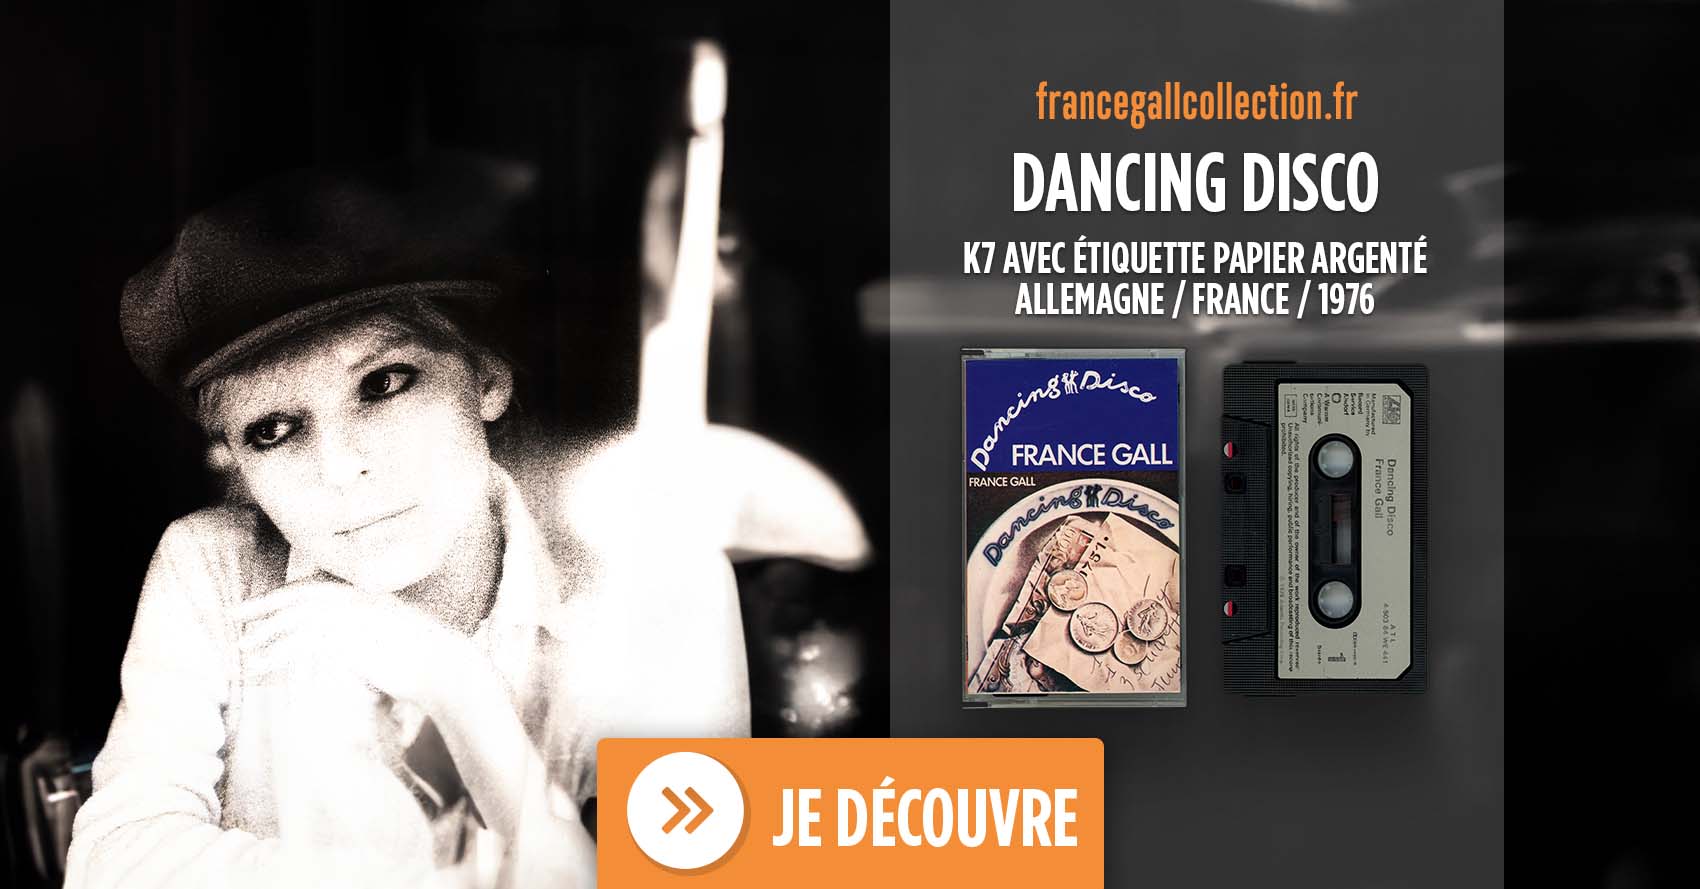 Album au format cassette avec une étiquette en papier argenté de Dancing Disco, le second album studio que Michel Berger a produit pour France Gall en 1977. Sur la cassette de cette édition imprimée en Allemagne, l'année indiquée est 1976 (© 1976 Atlantic Recording Corp.).